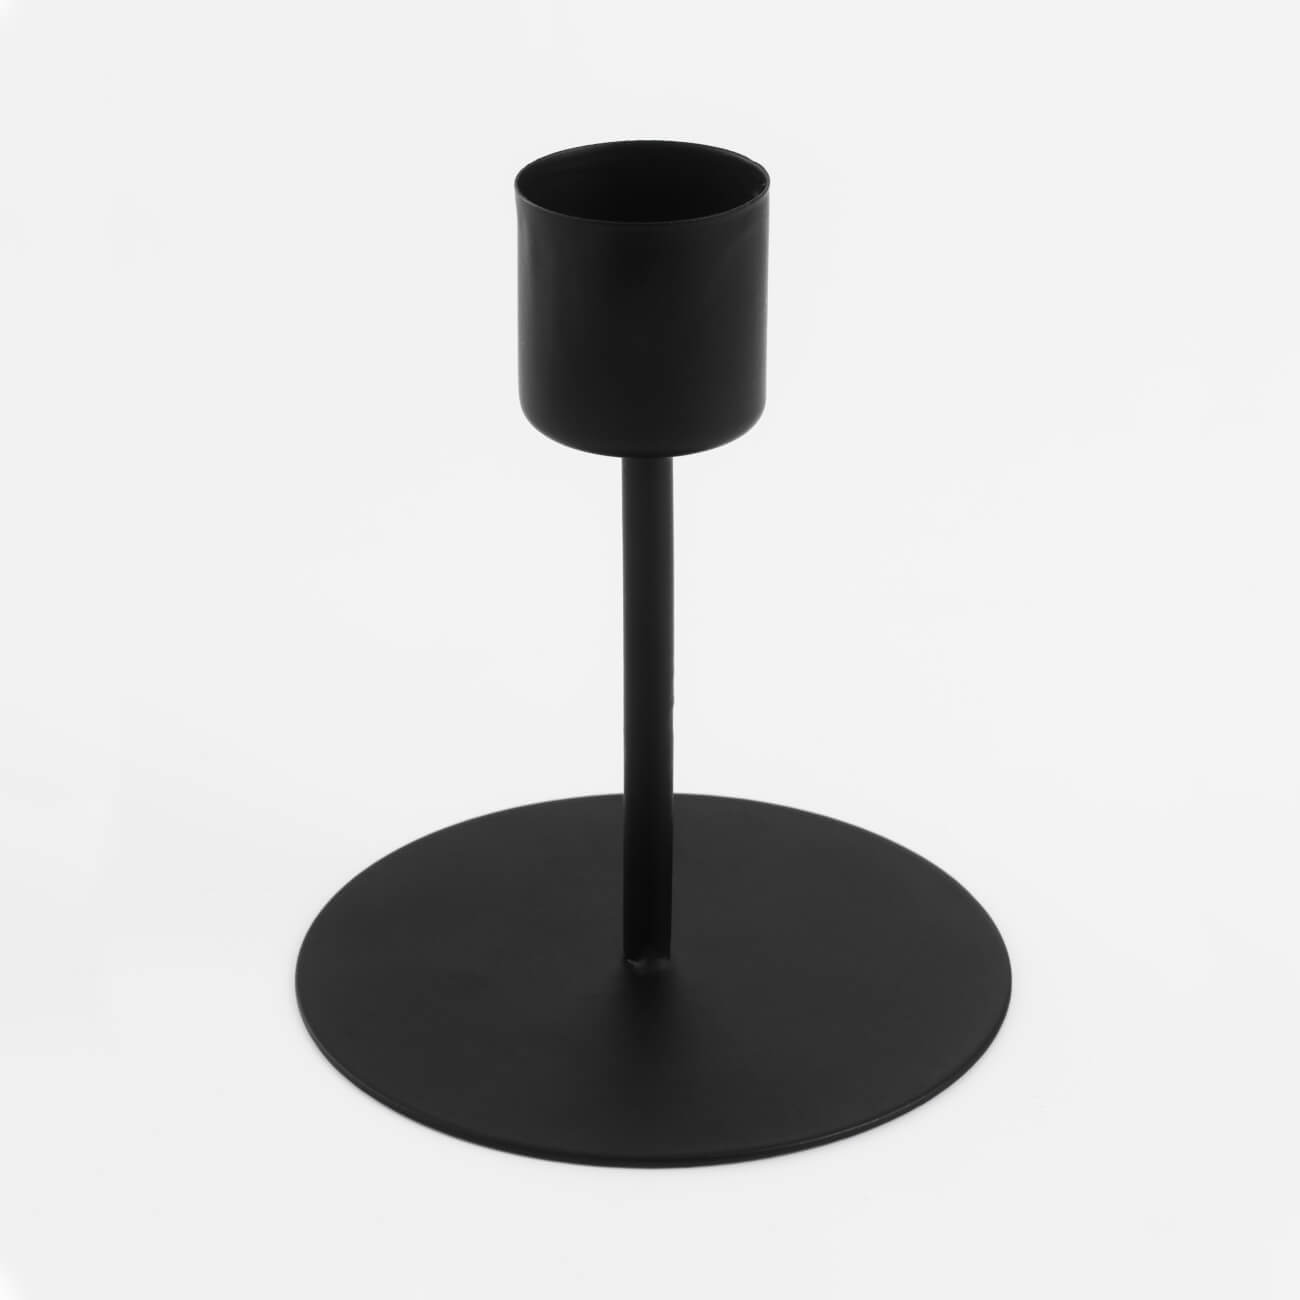 подсвечник 25 см для цилиндрической свечи металл стекло круг twist black Подсвечник, 10 см, для тонкой свечи, на ножке, металл, черный, Black style